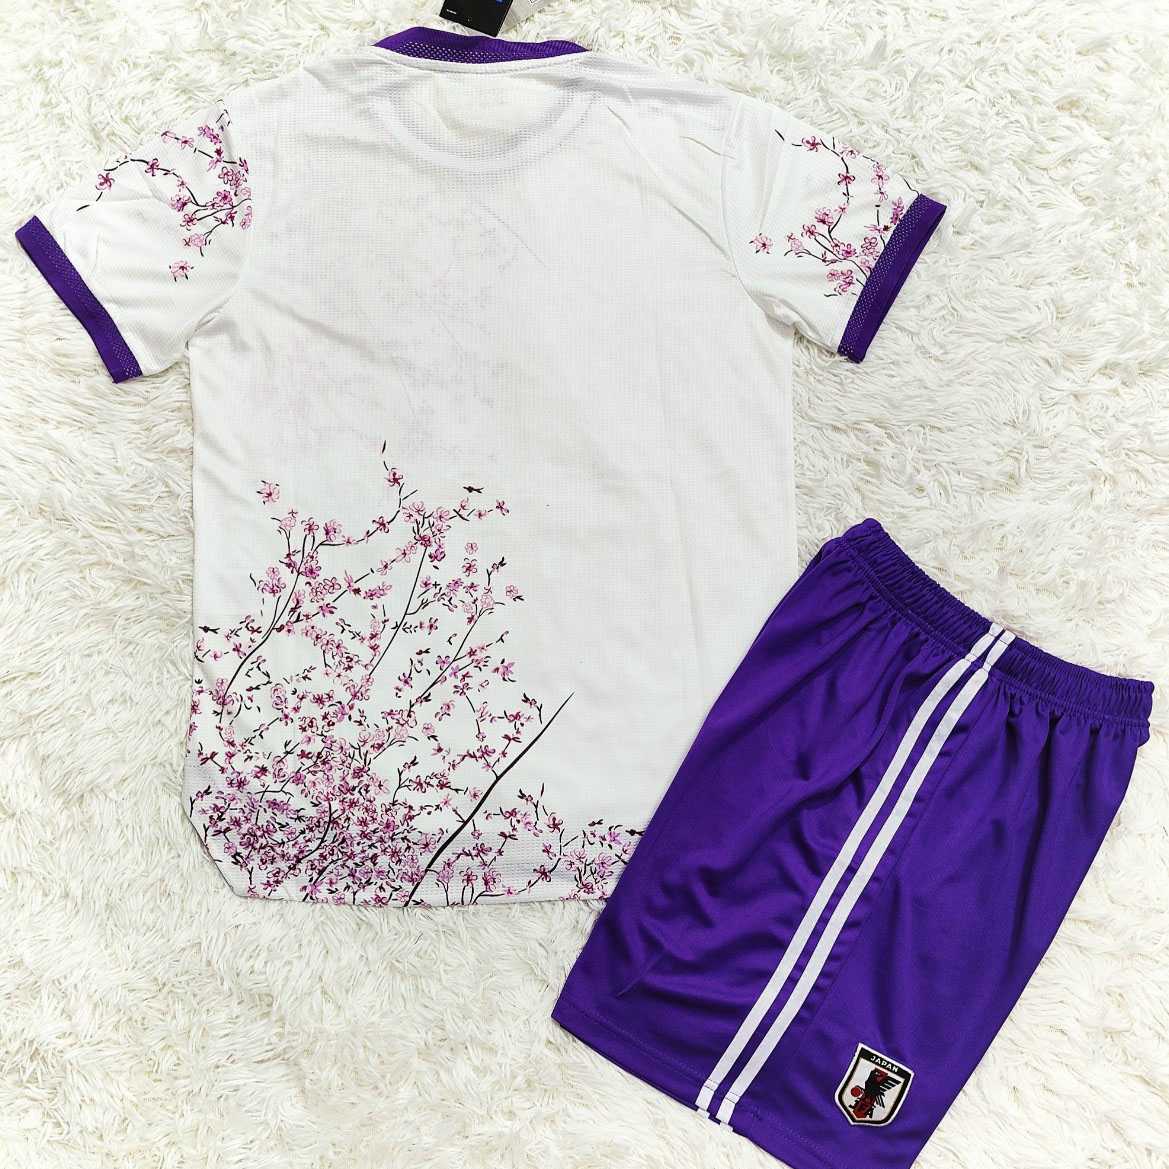 Bộ quần áo đội tuyển nhật bản japan màu trắng hồng hoa anh đào cả cành viền quần tím logo thêu 2